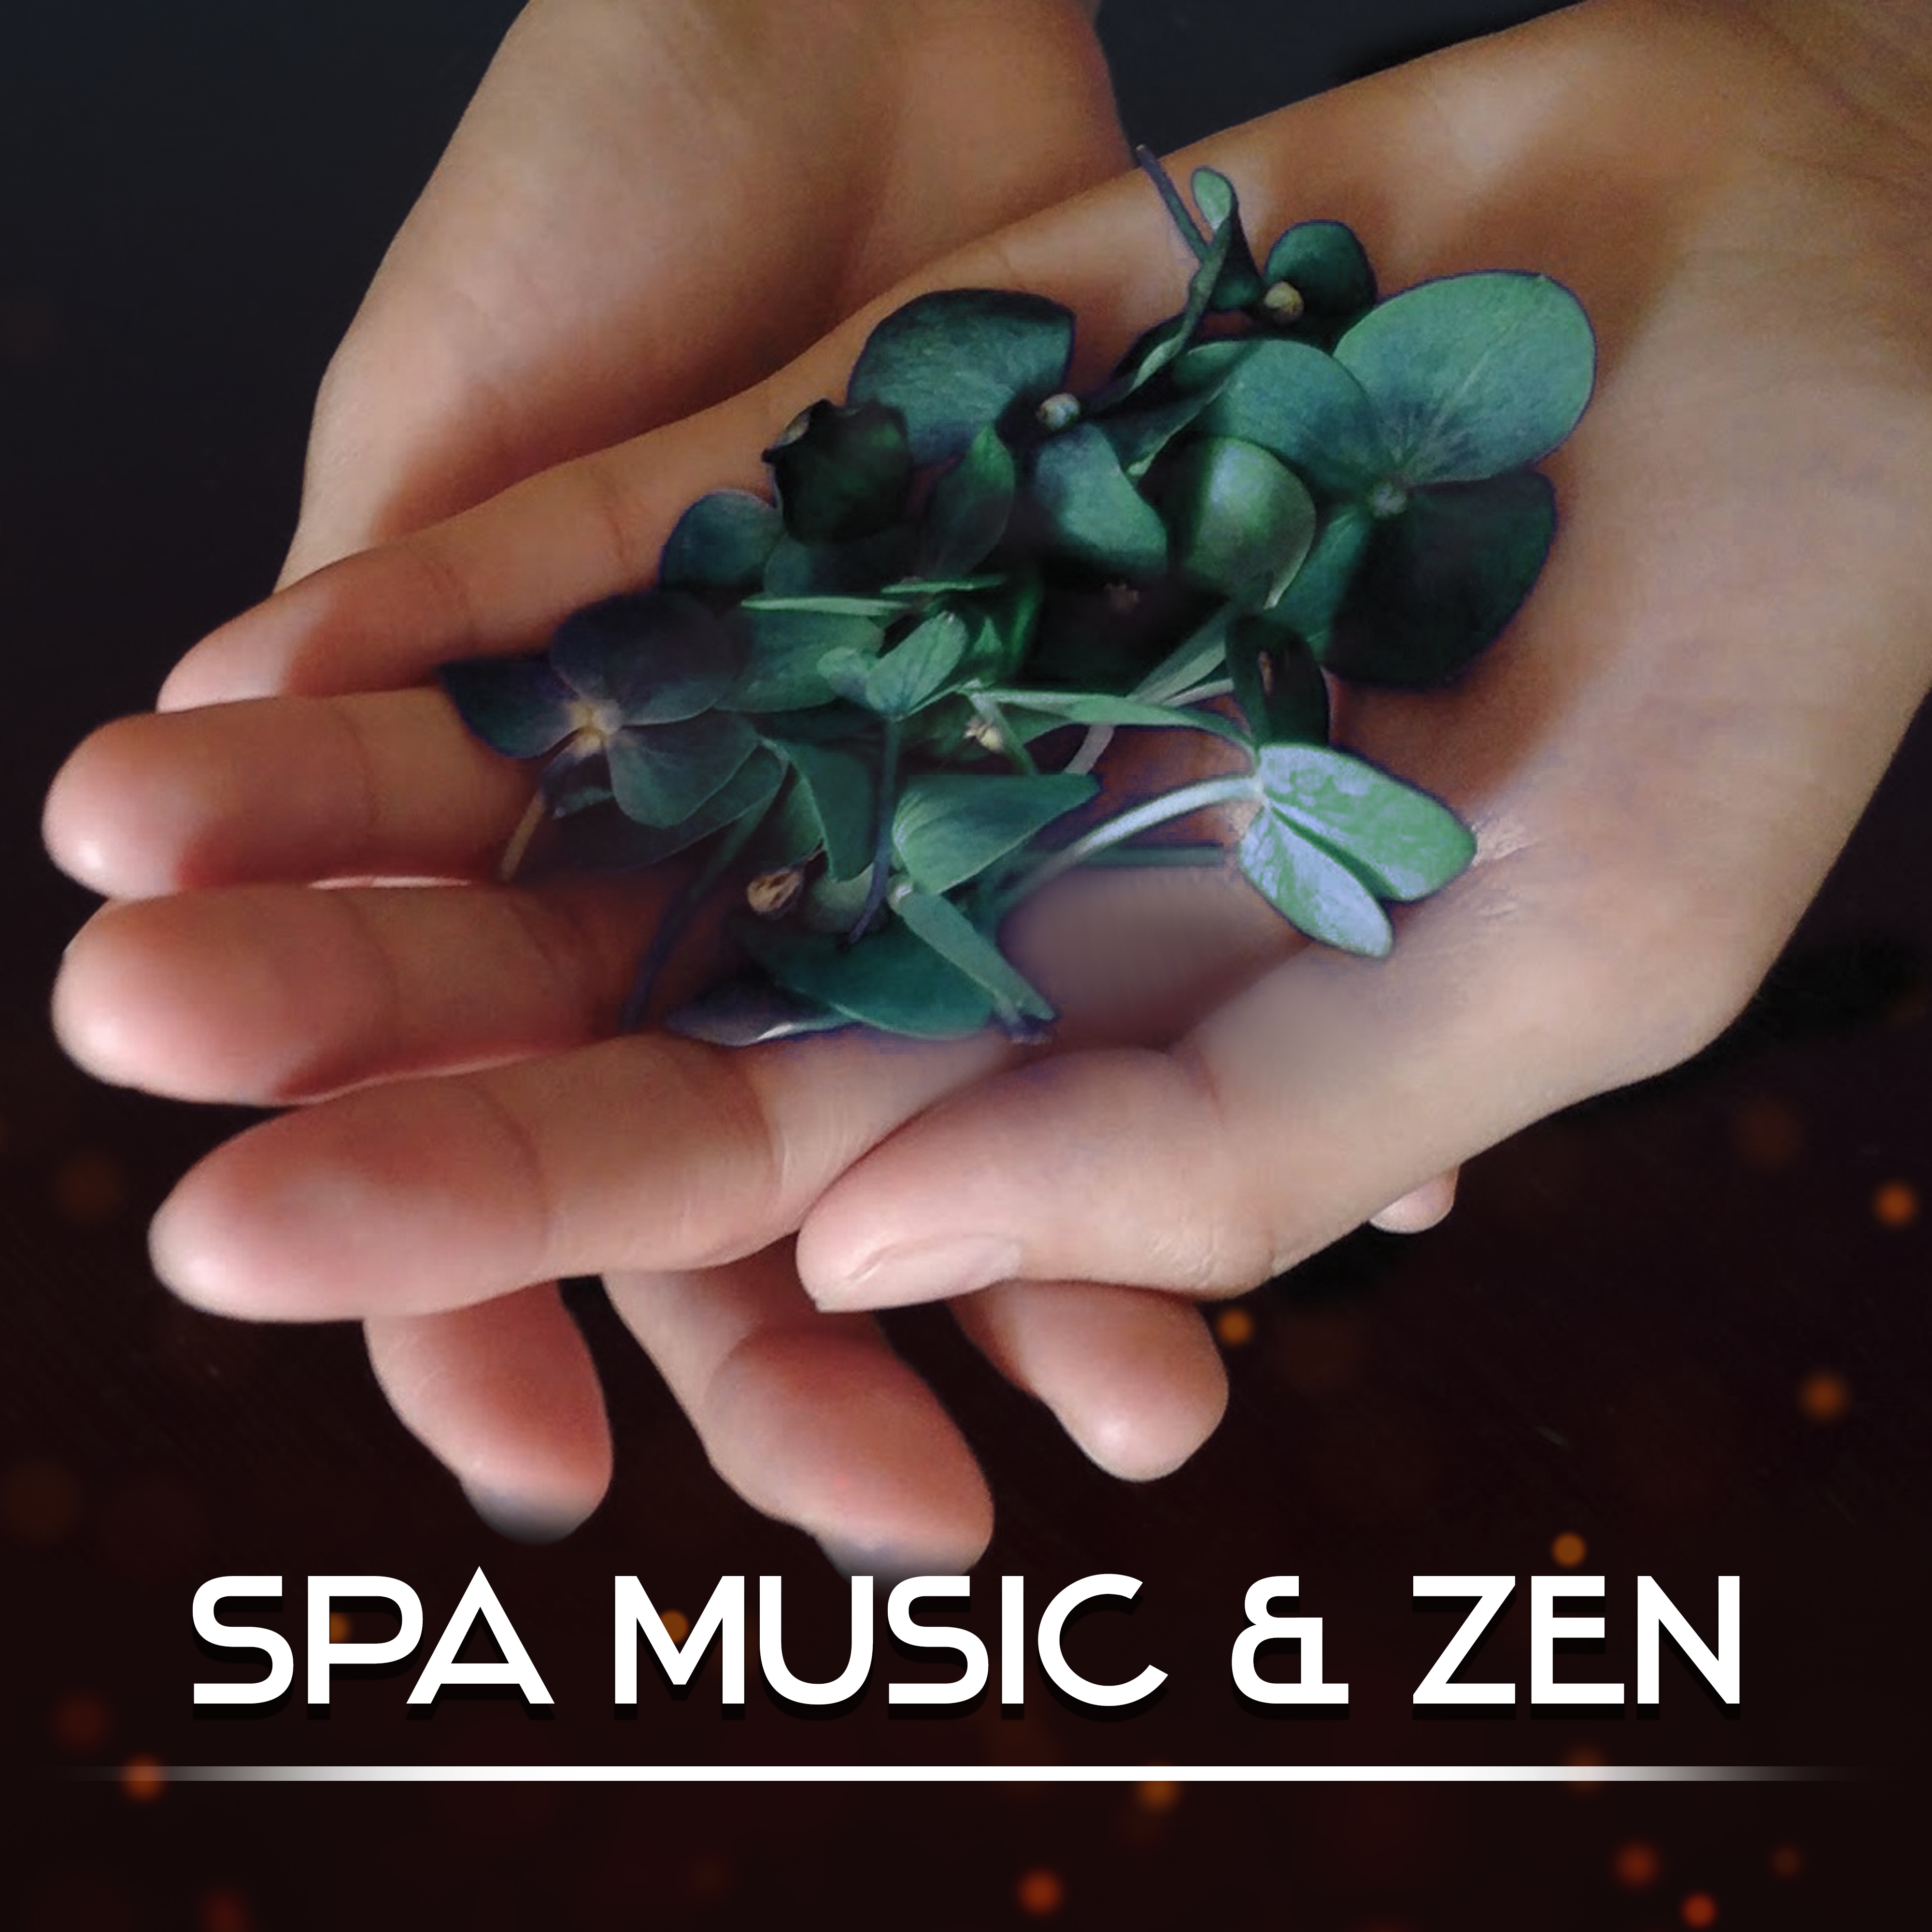 Spa Music & Zen – Healing Sounds for Massage, Wellness, Stress Relief, Reiki Music, Spa Dreams, Asian Zen